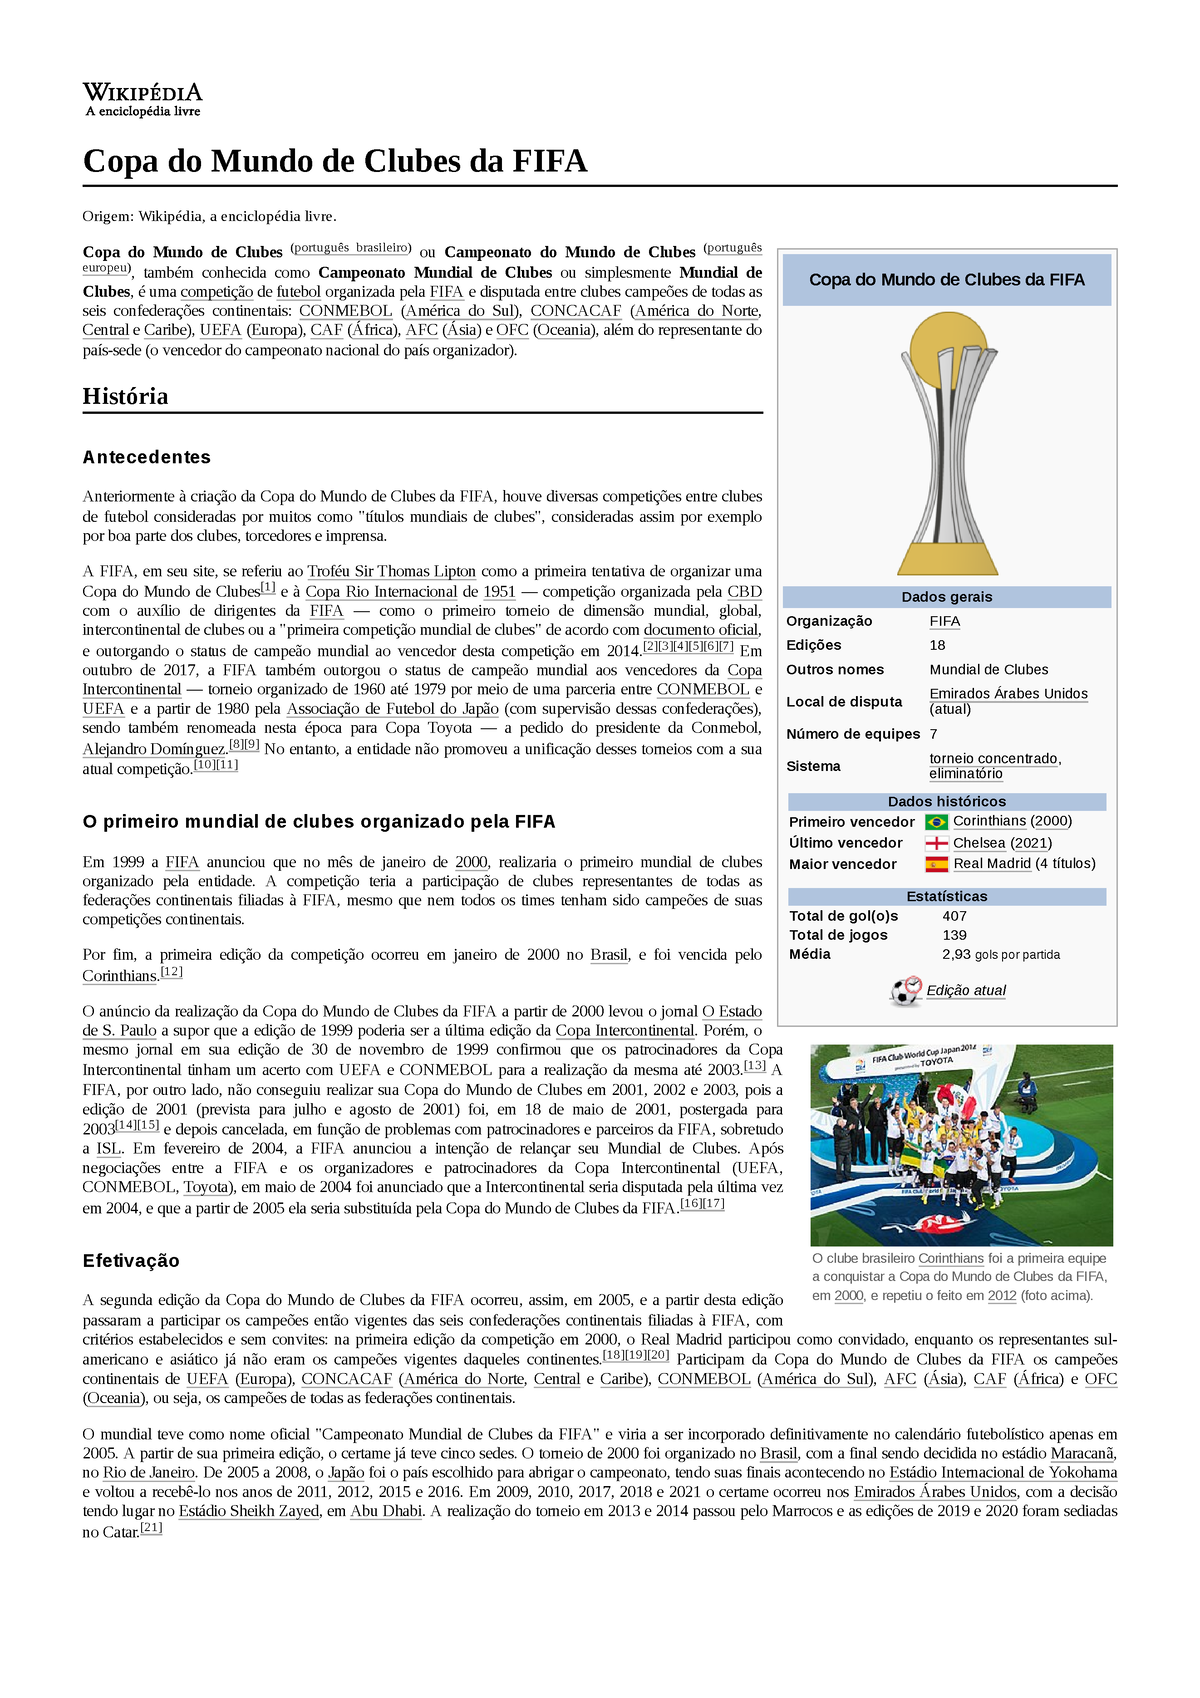 Copa do Mundo de Clubes da FIFA de 2015 – Wikipédia, a enciclopédia livre